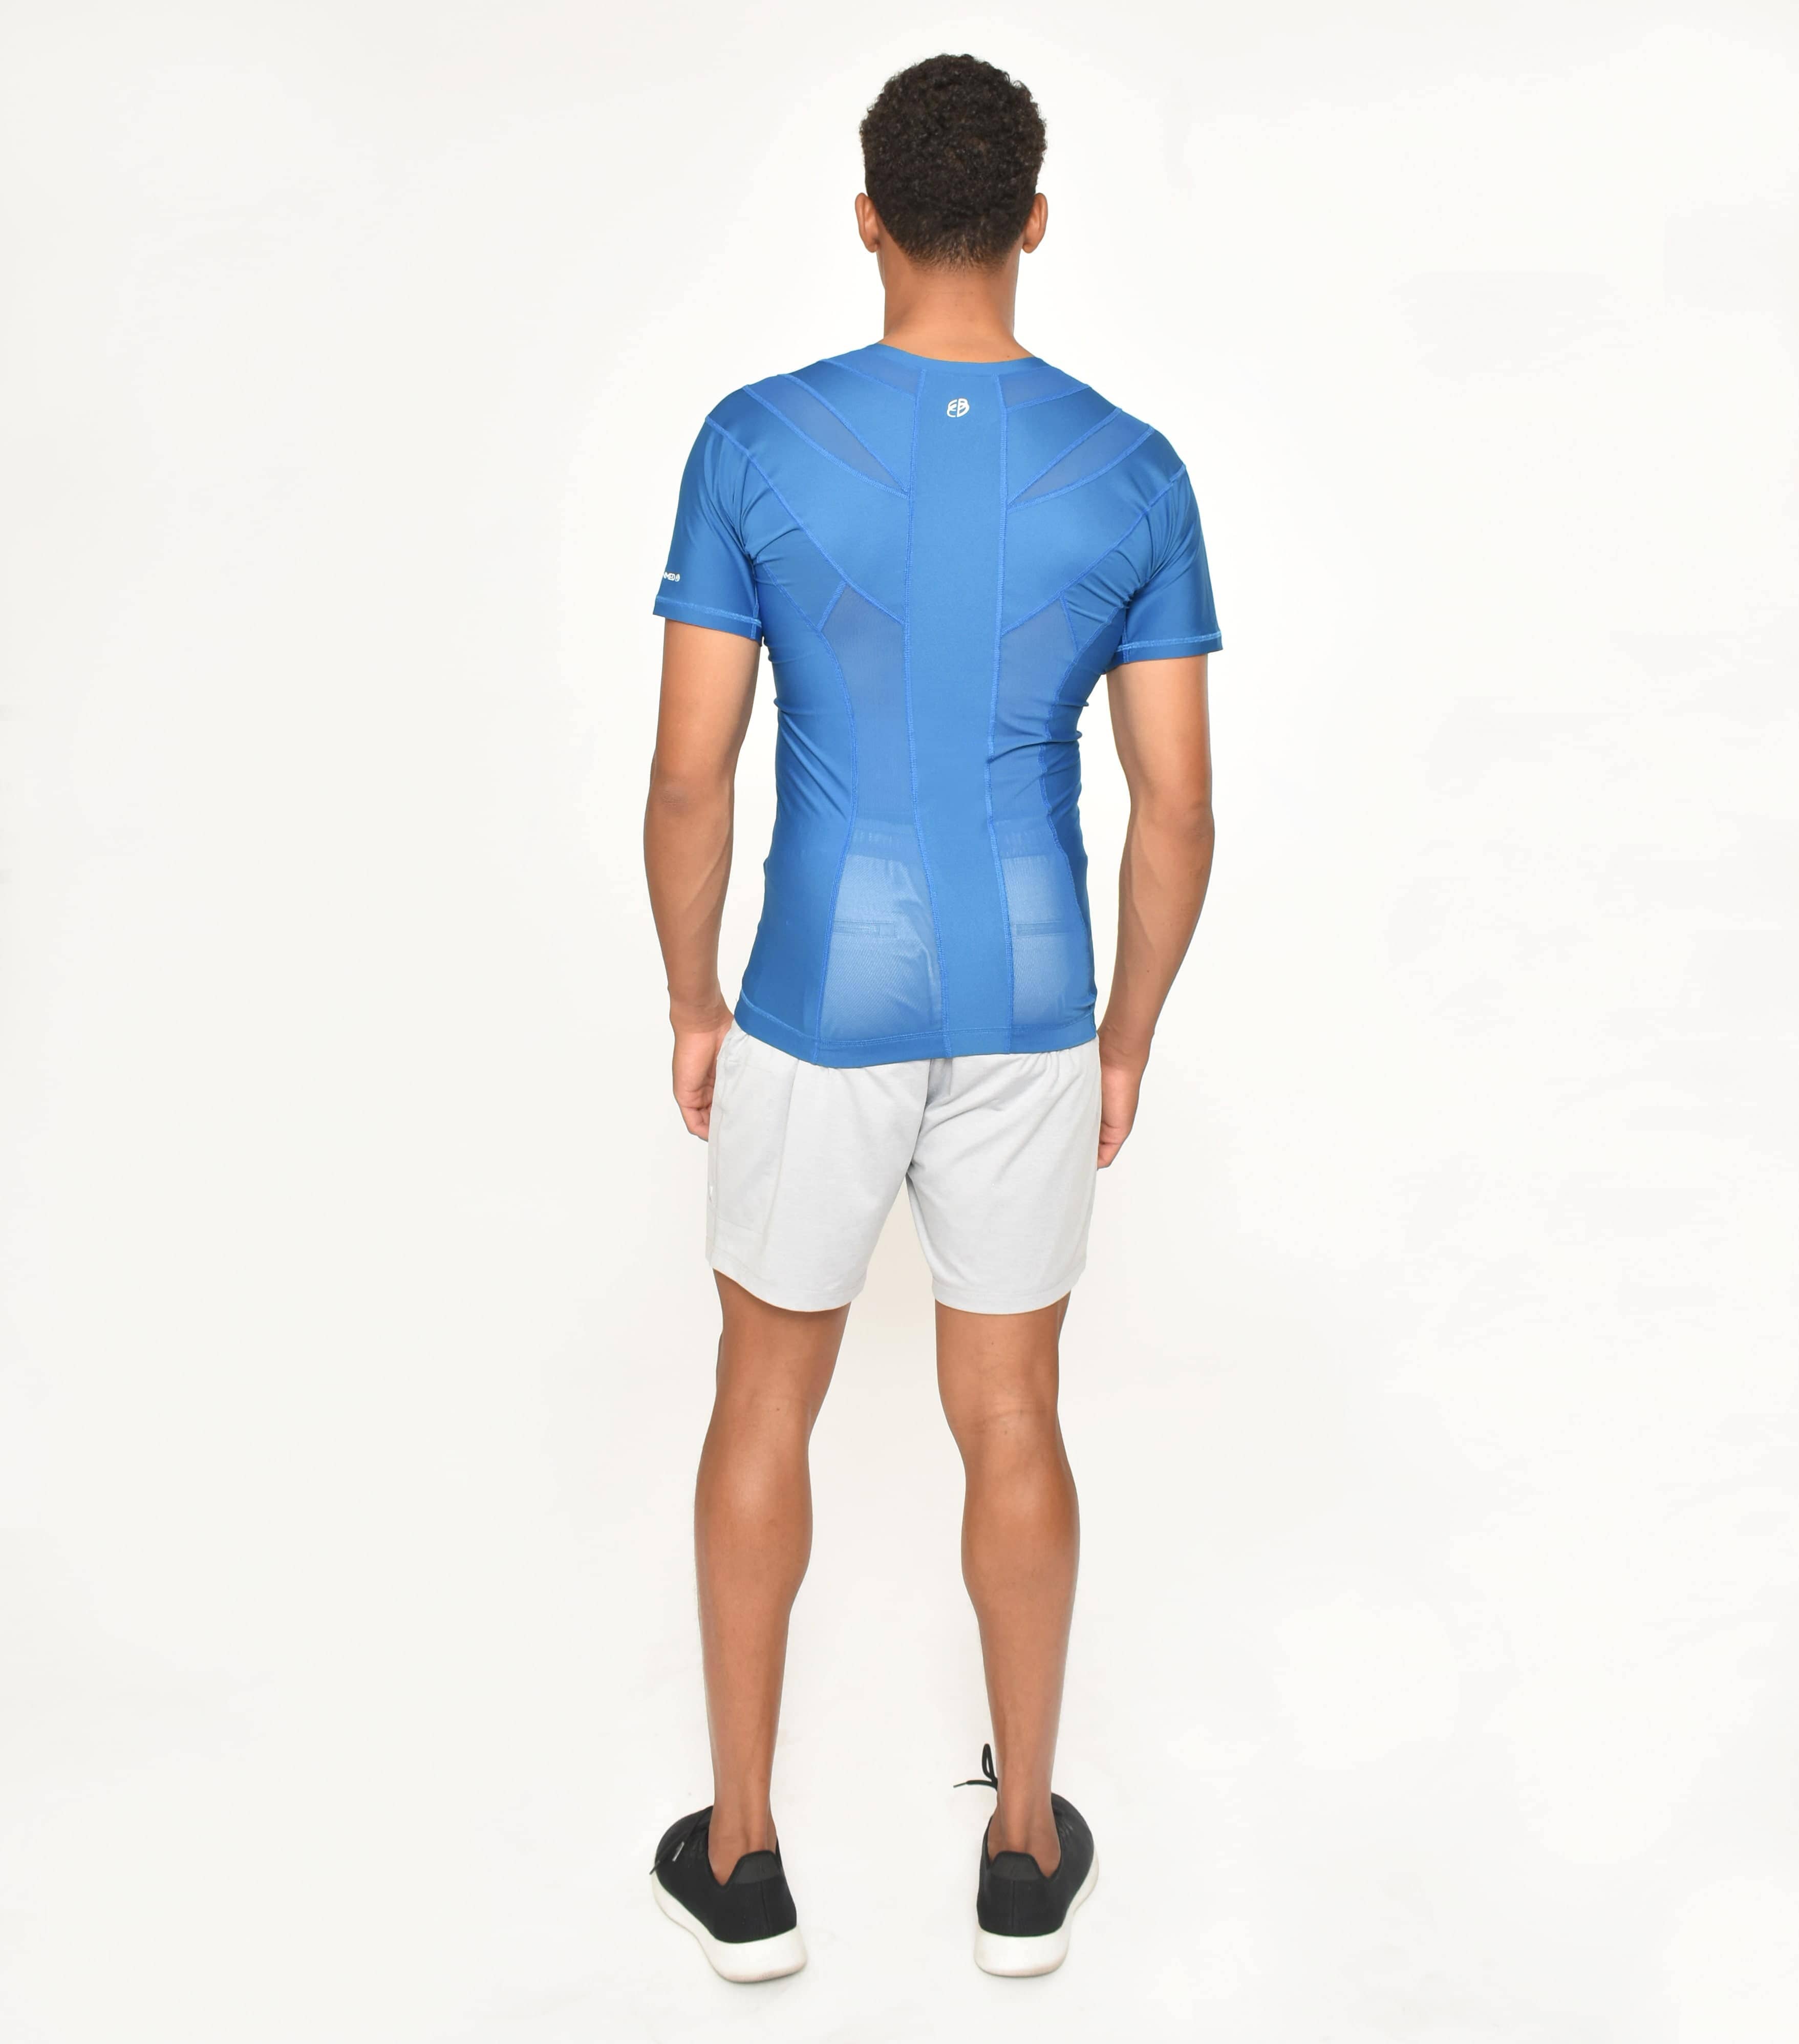 Posture Shirt® For Men - Alignmed